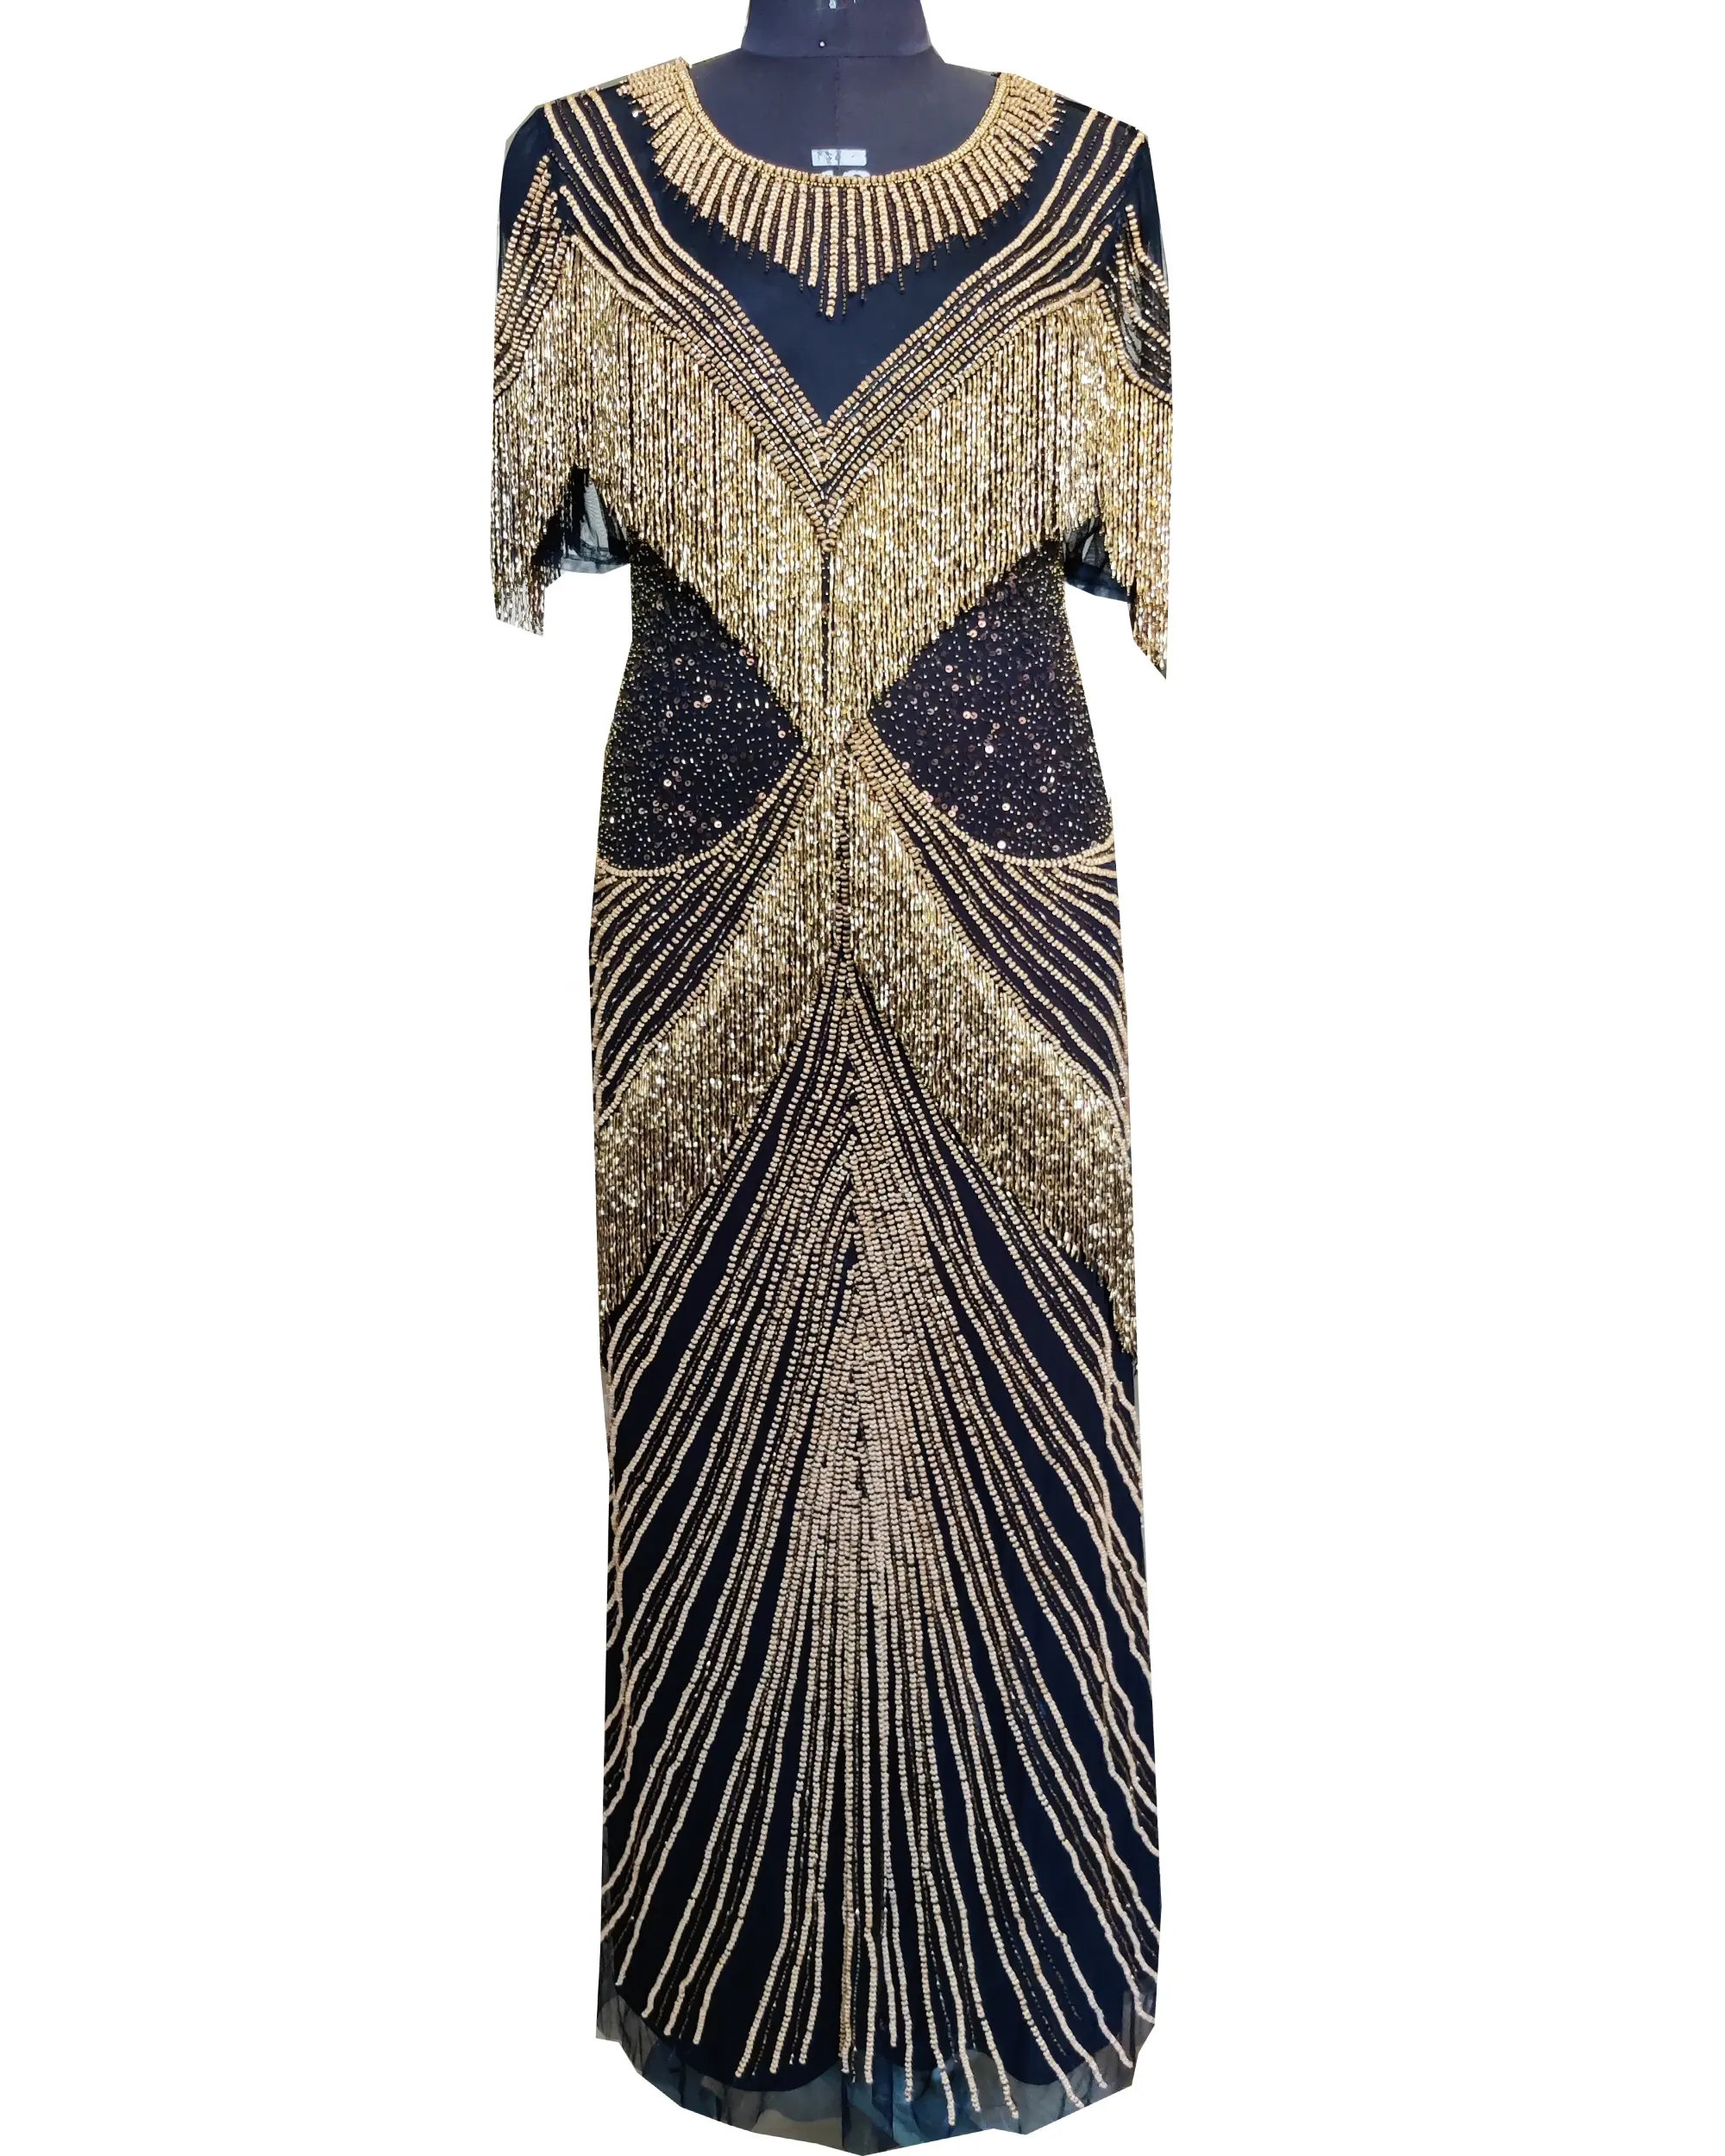 Çok güzel mısır tasarım el işlemeli saçaklı tasarım akşam parti elbise